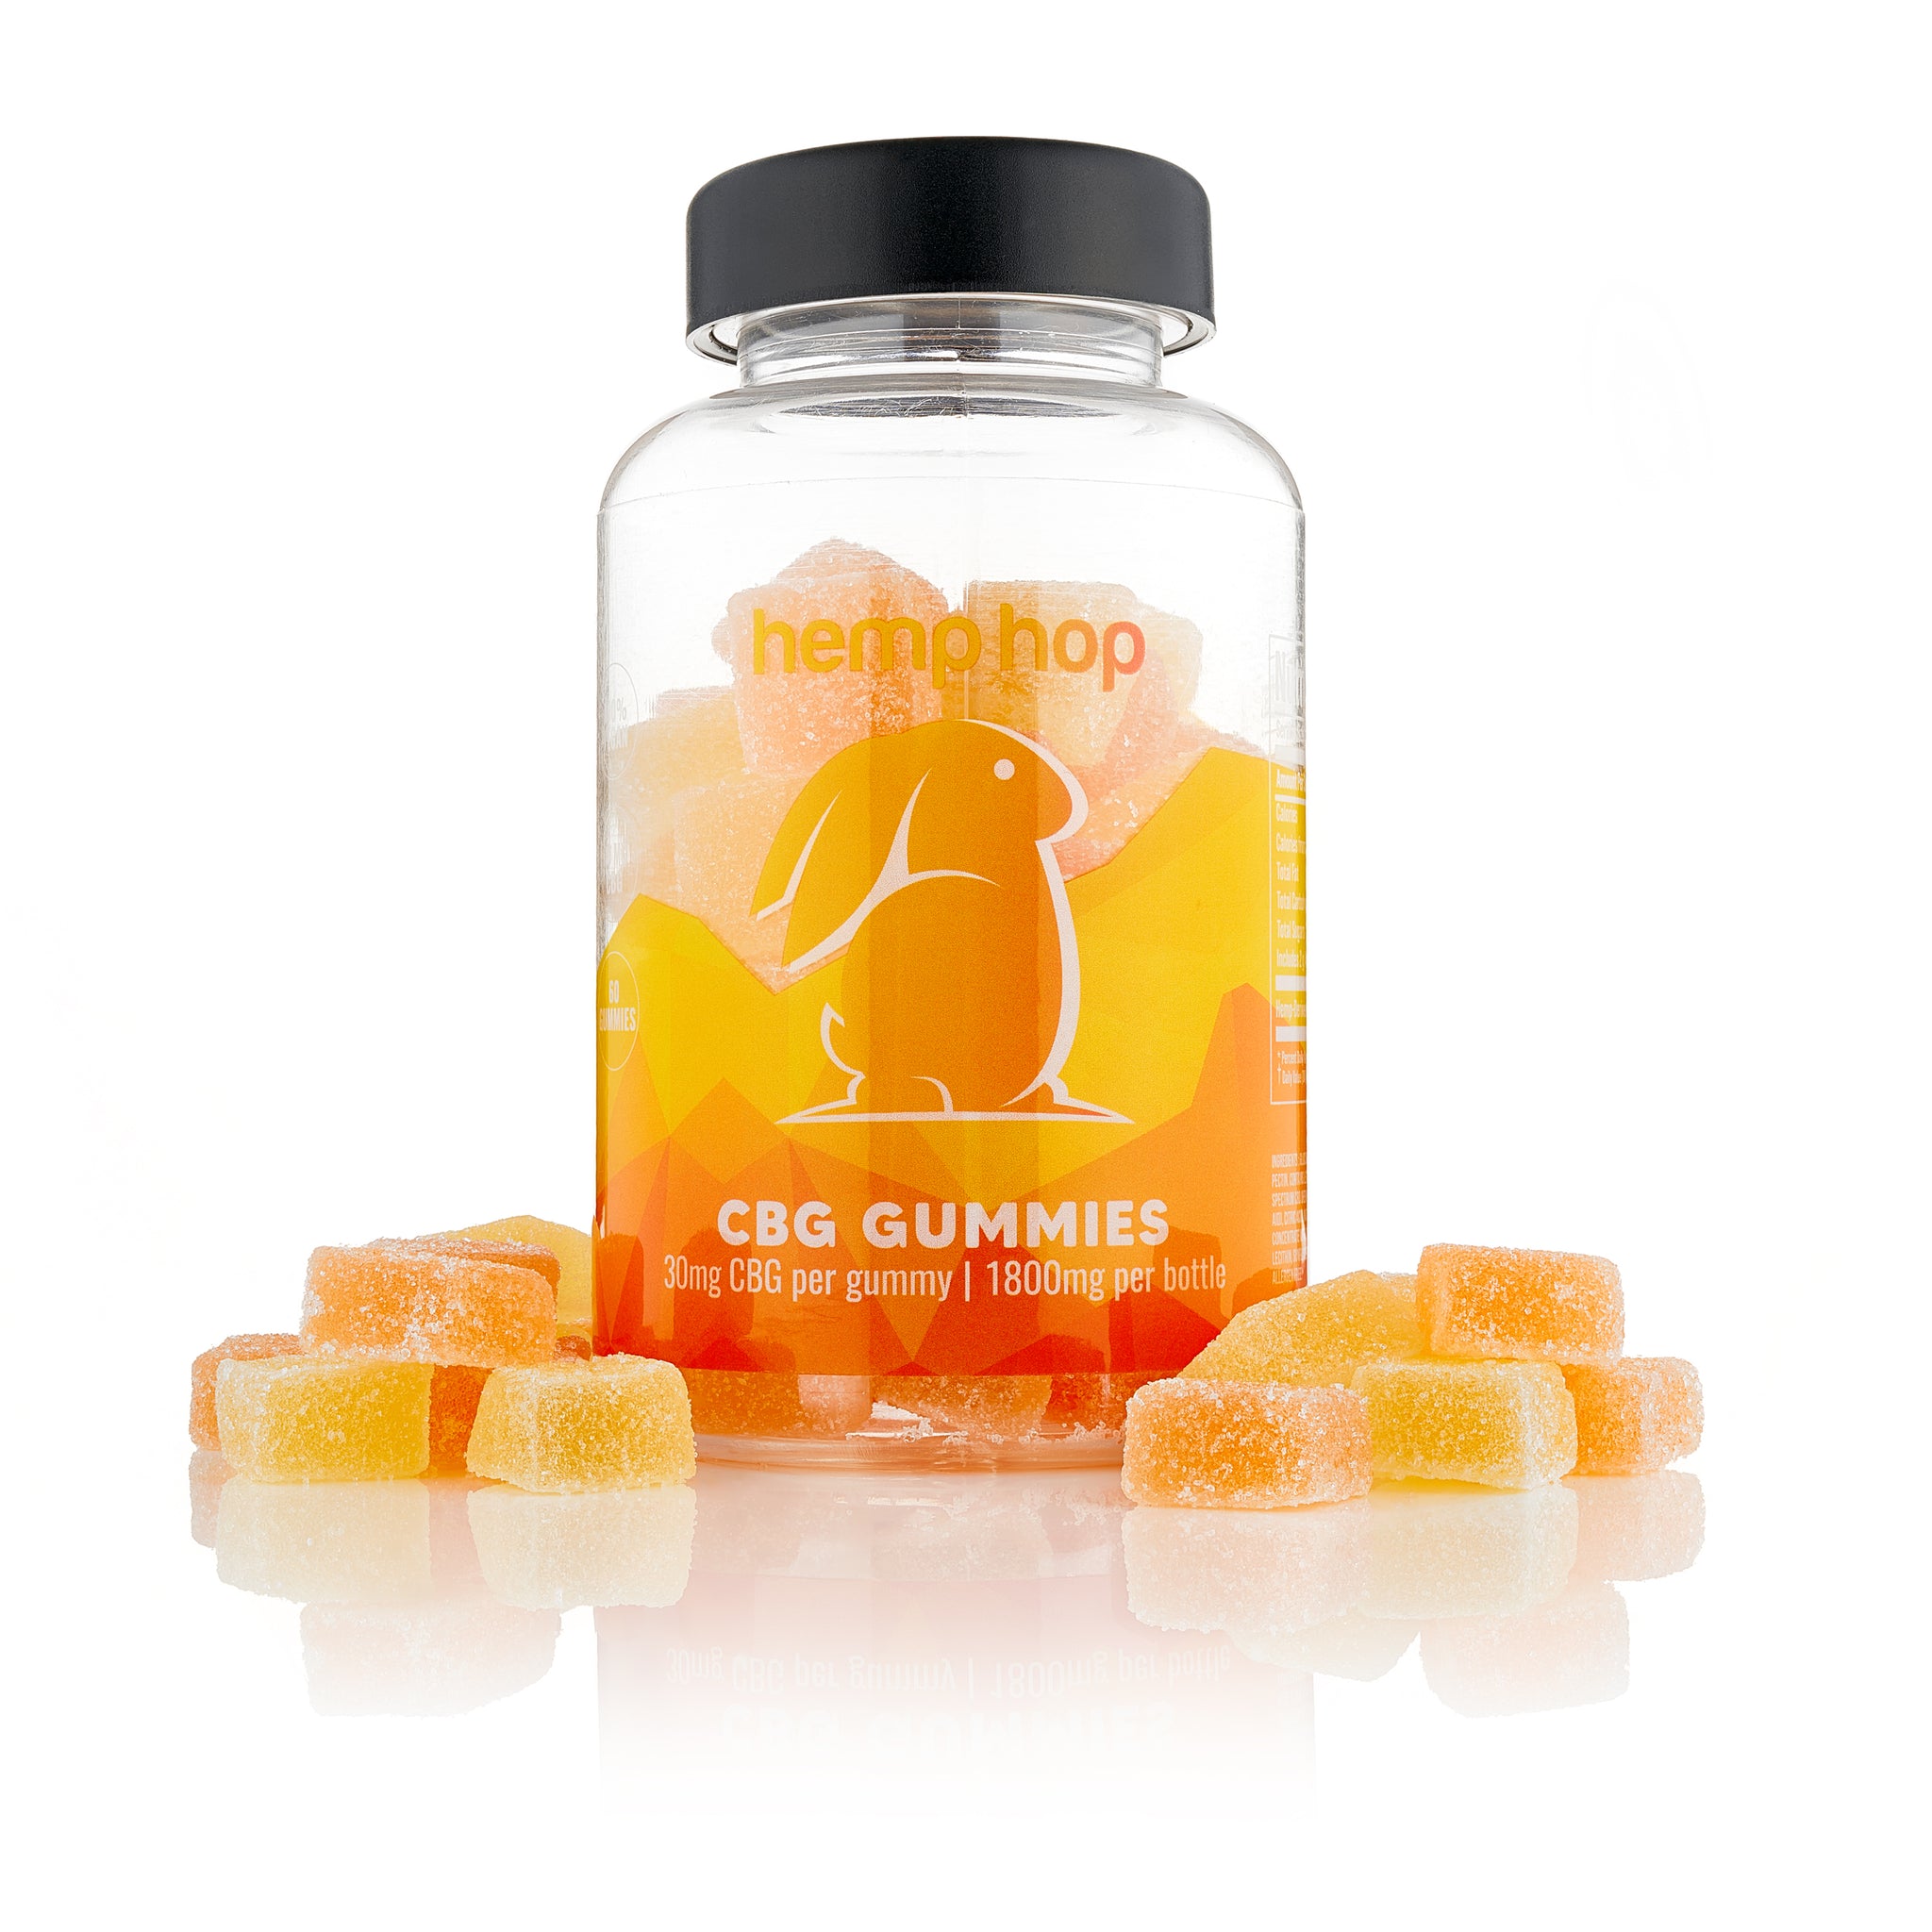 cbg gummies for energy